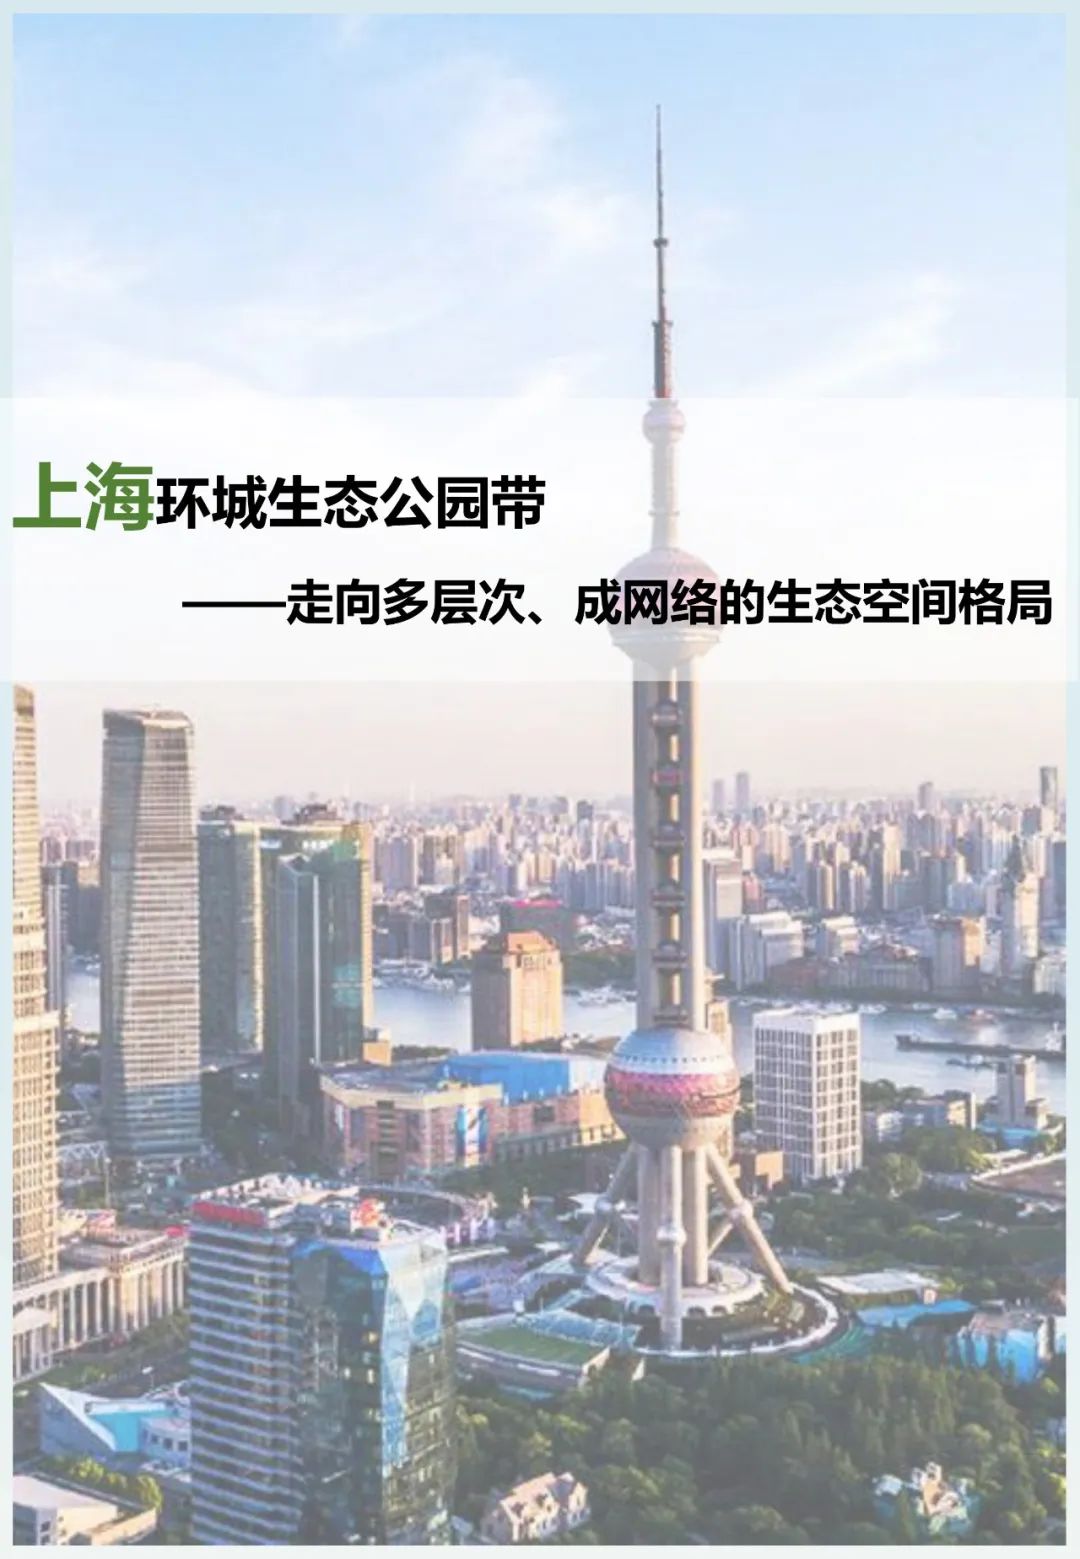 上海环城生态公园带——走向多层次、成网络的生态空间格局